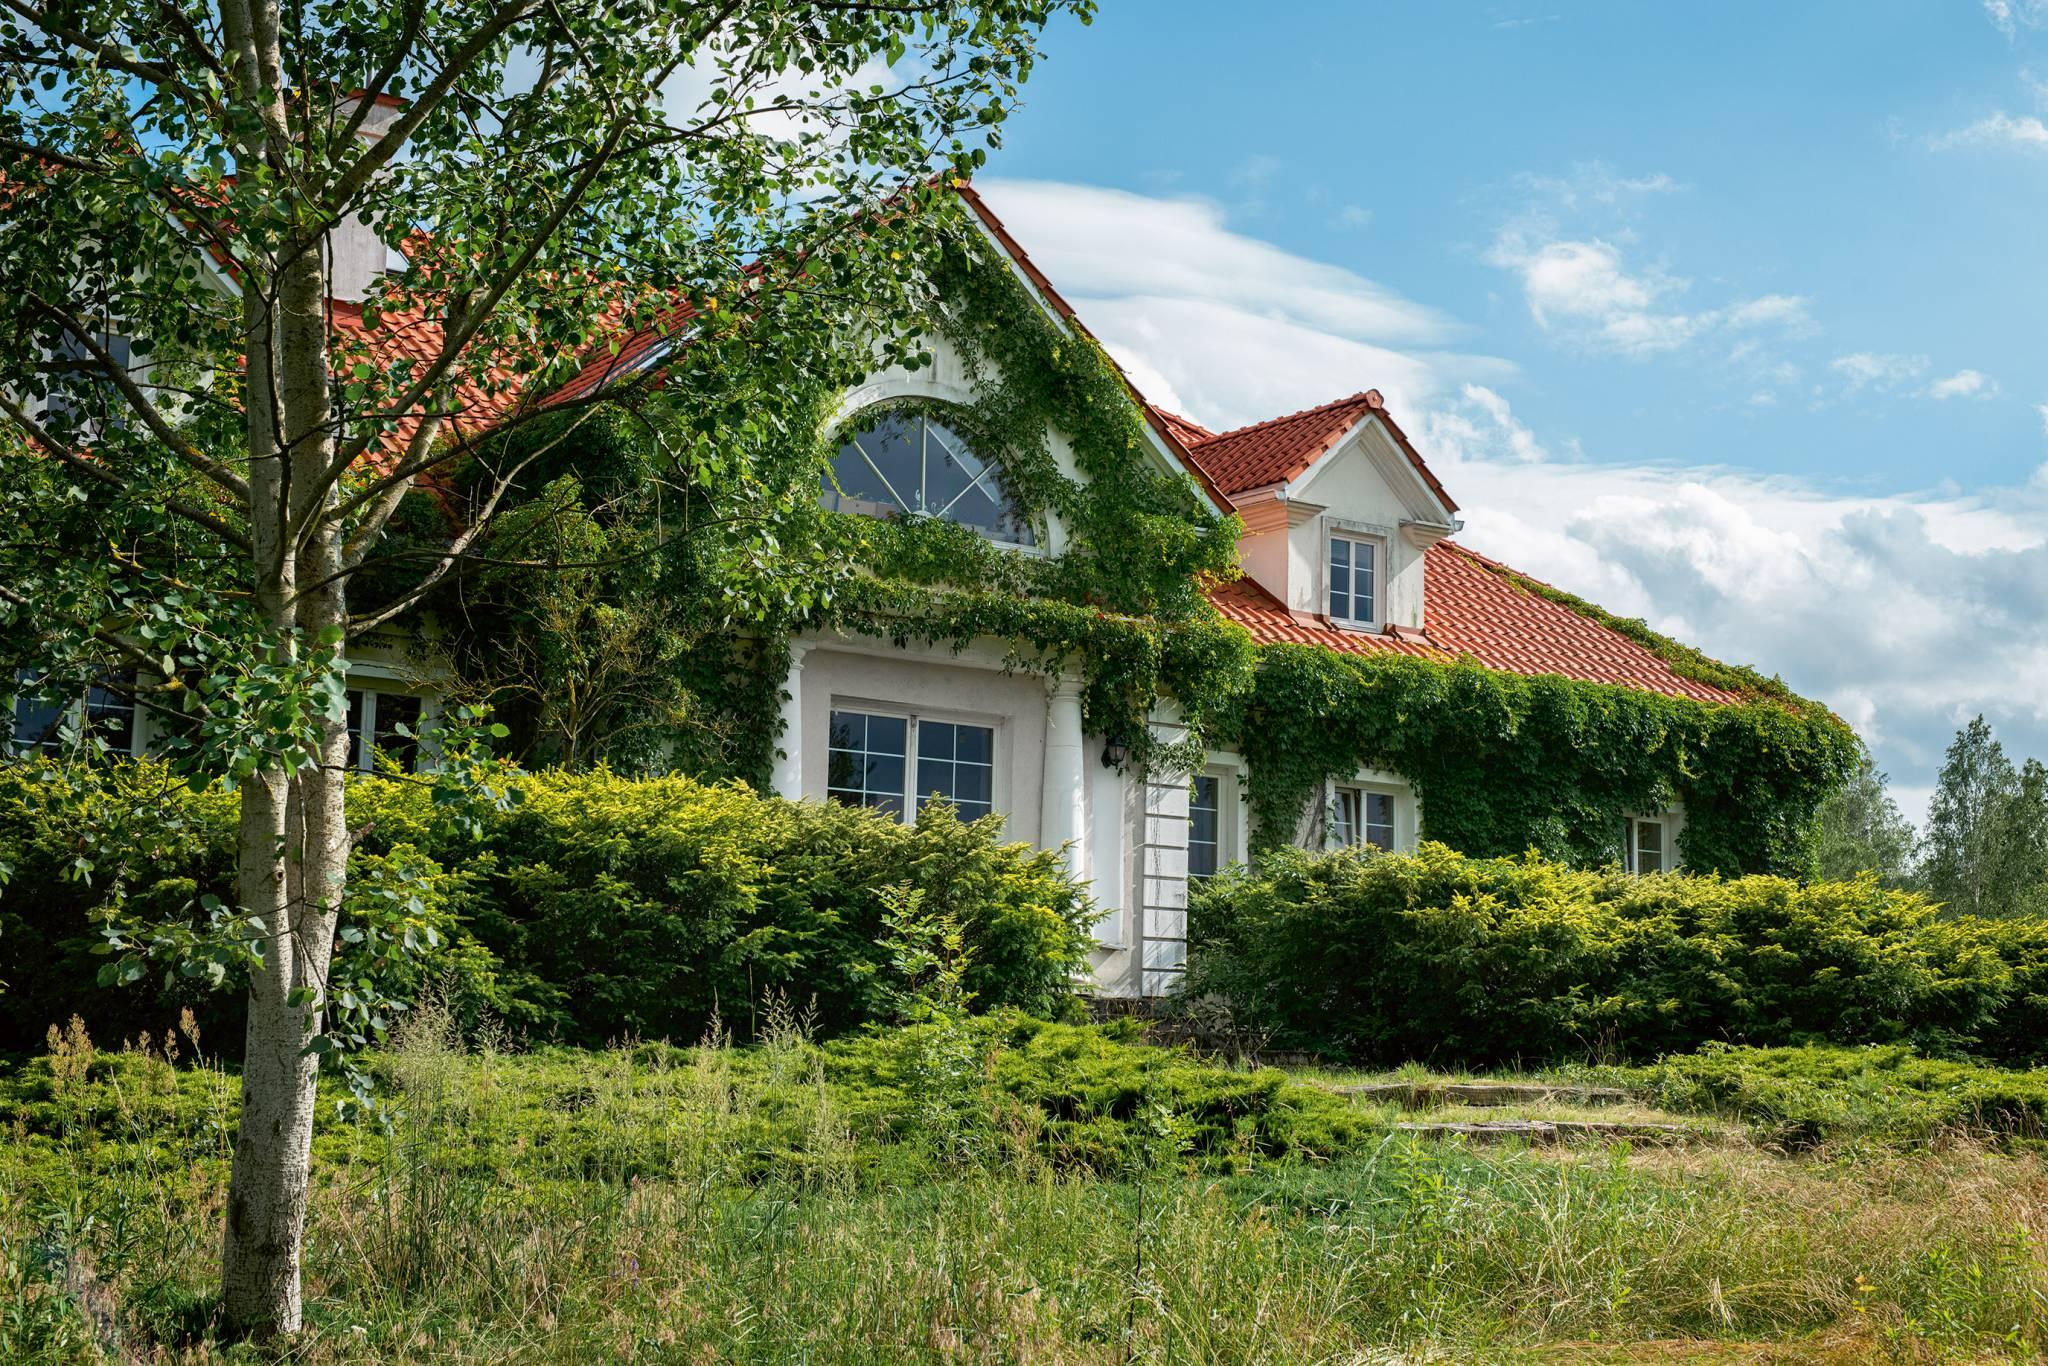  Dom od frontu – pierwowzorem był dworek na Litwie, należący do rodziny Pawła. (Fot. Adam Słaboń/The Dreams Studio)